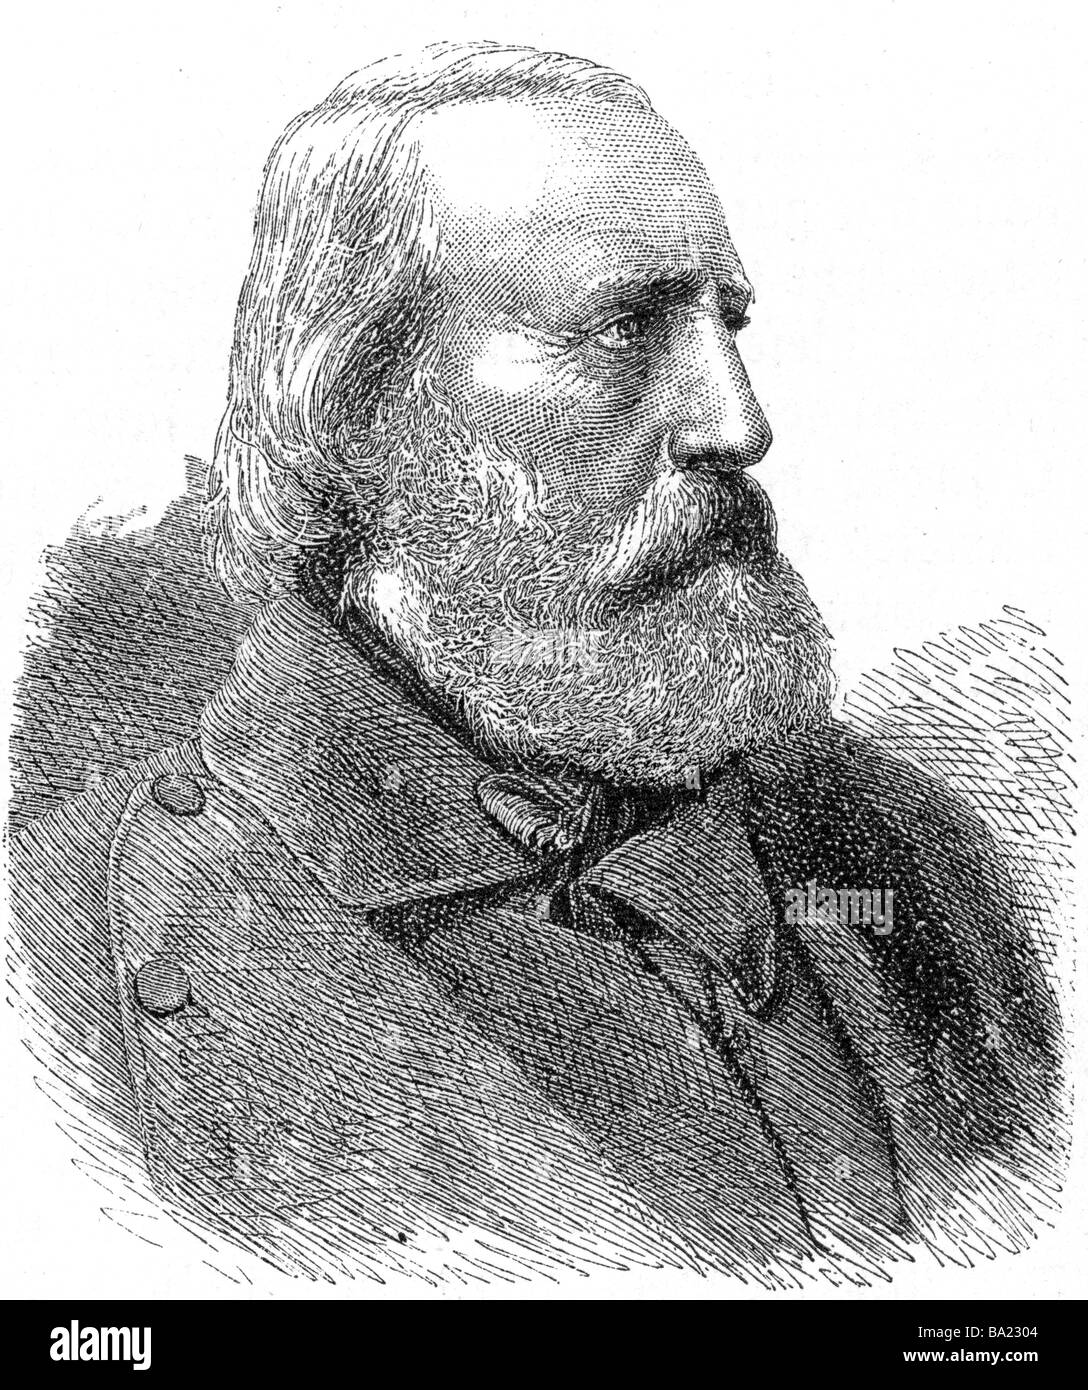 Garibaldi, Giuseppe, 4.7.1807 - 2.6.1882, patriote italien, portrait, gravure sur bois, 19e siècle, l'Italie, risorgimento, nationa Banque D'Images